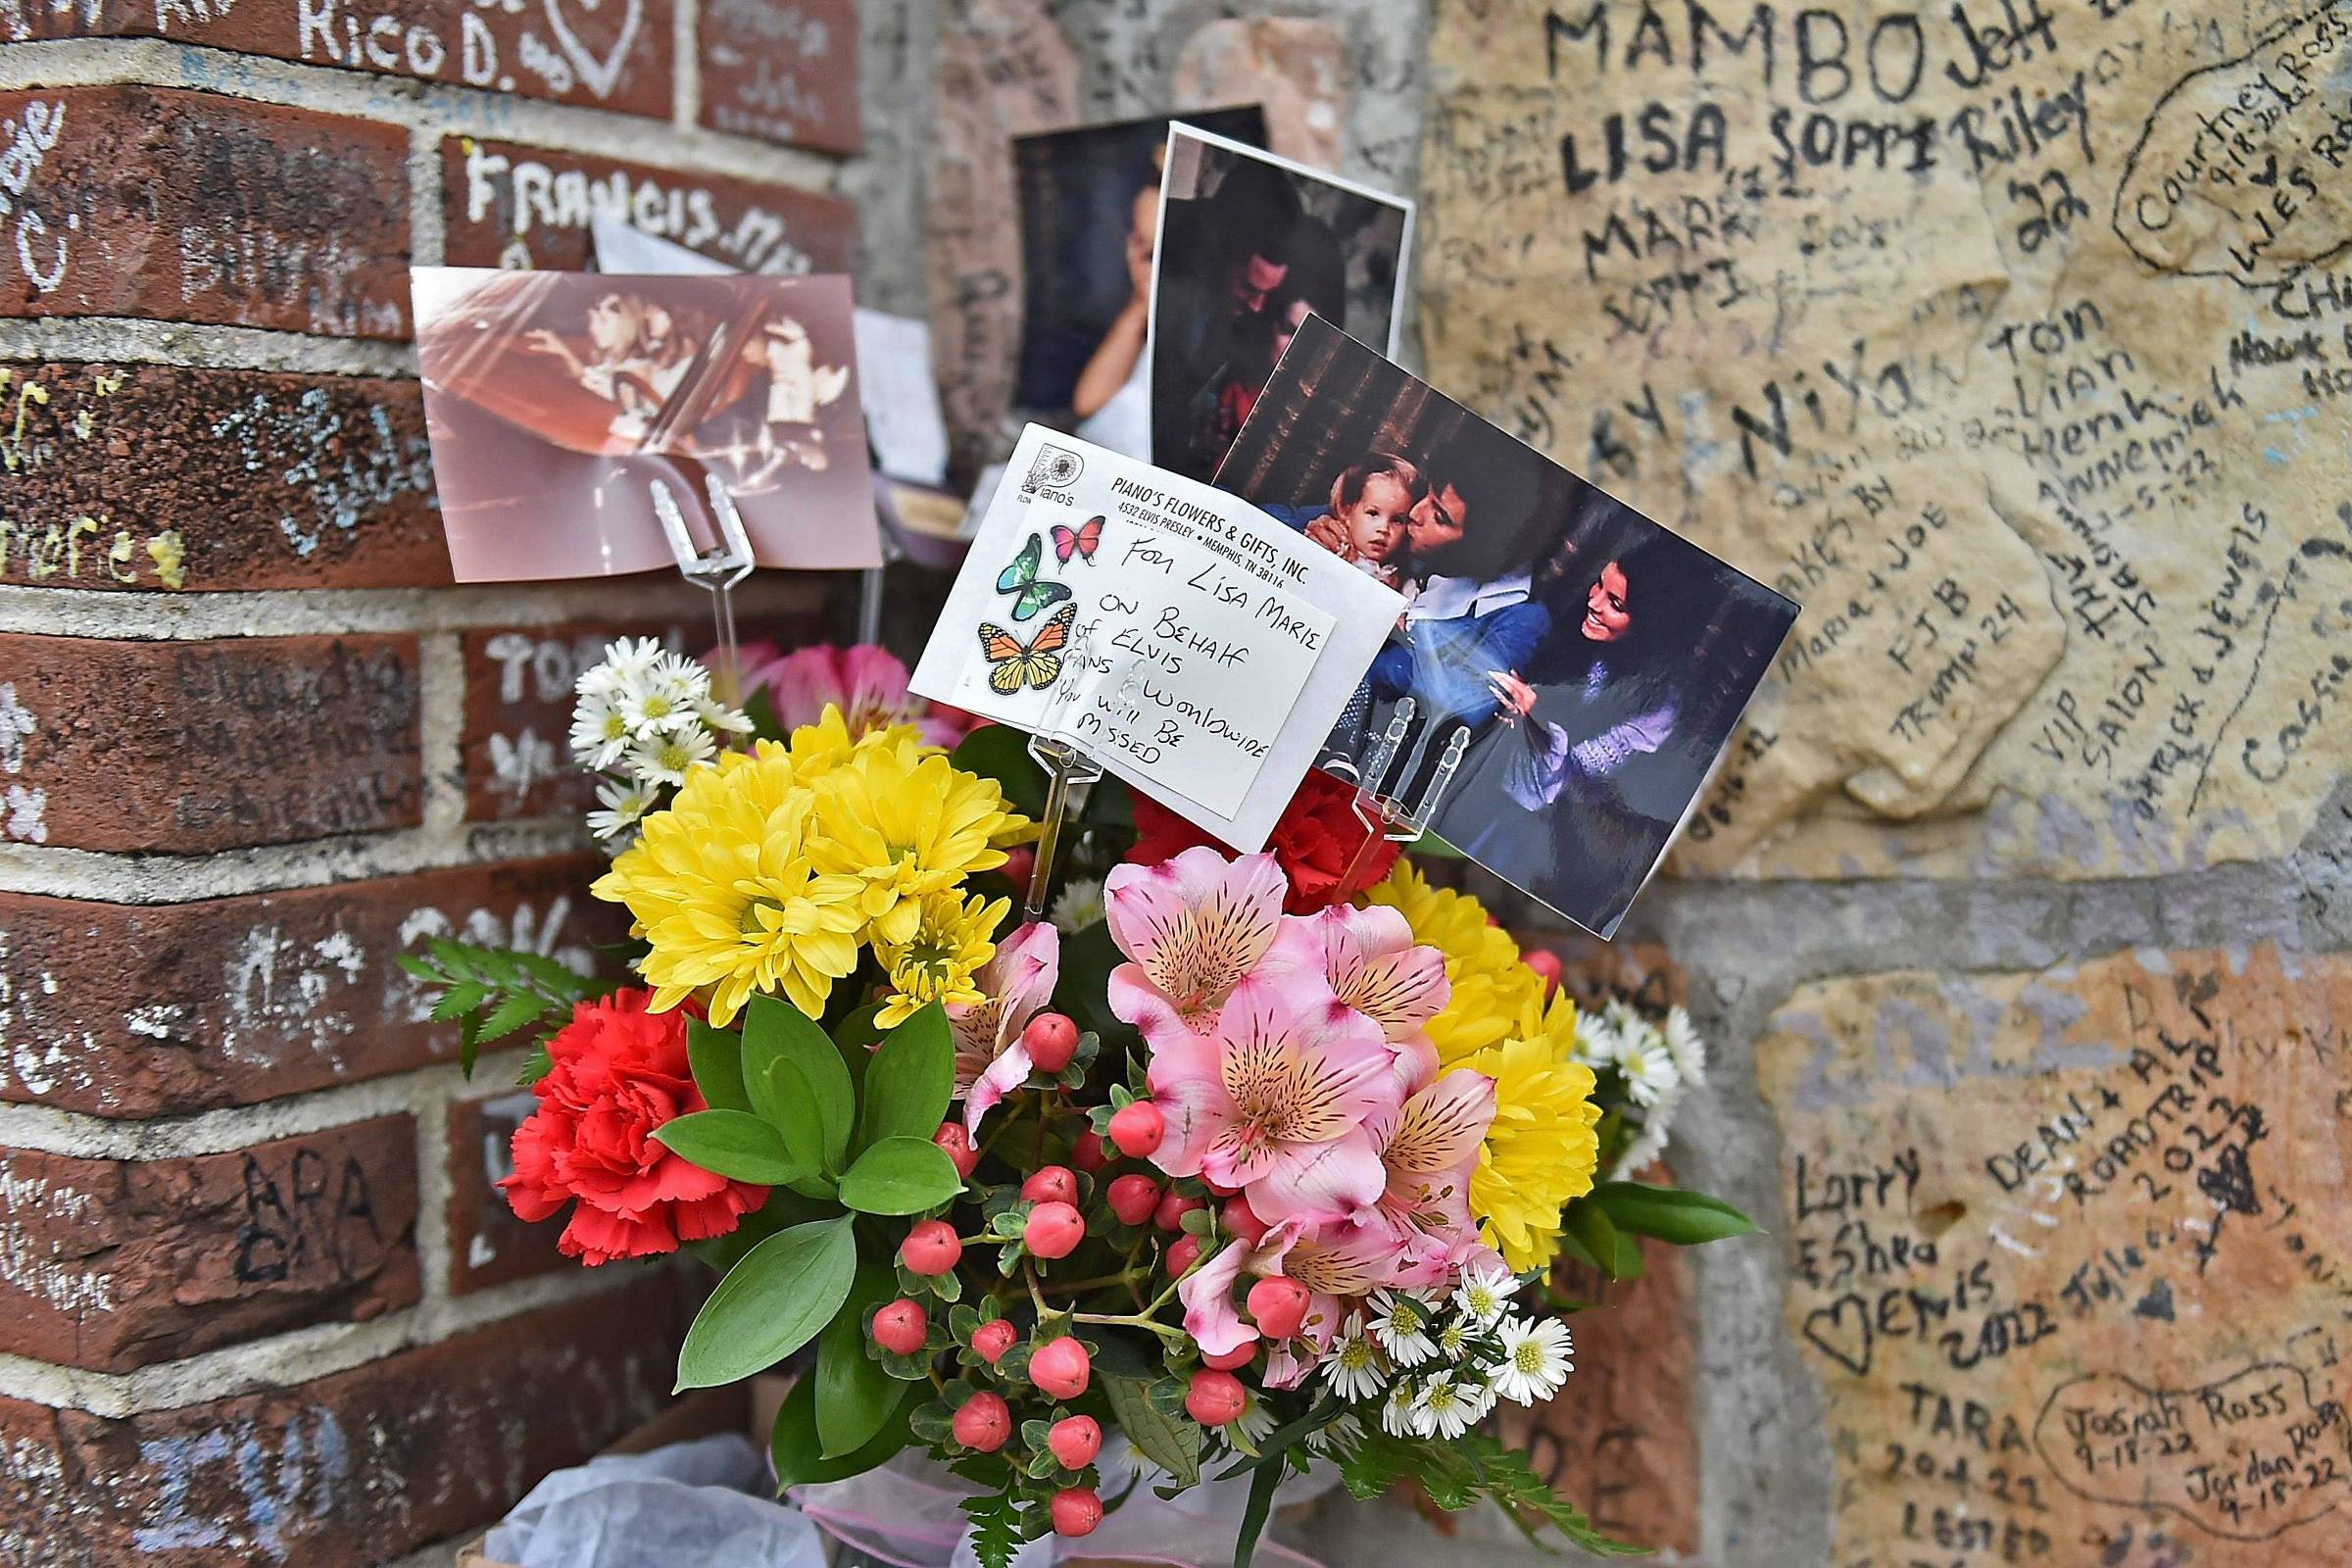 Filha de Lisa Marie Presley revela existência de 'bebé secreta' durante o  funeral da mãe - Fama Show